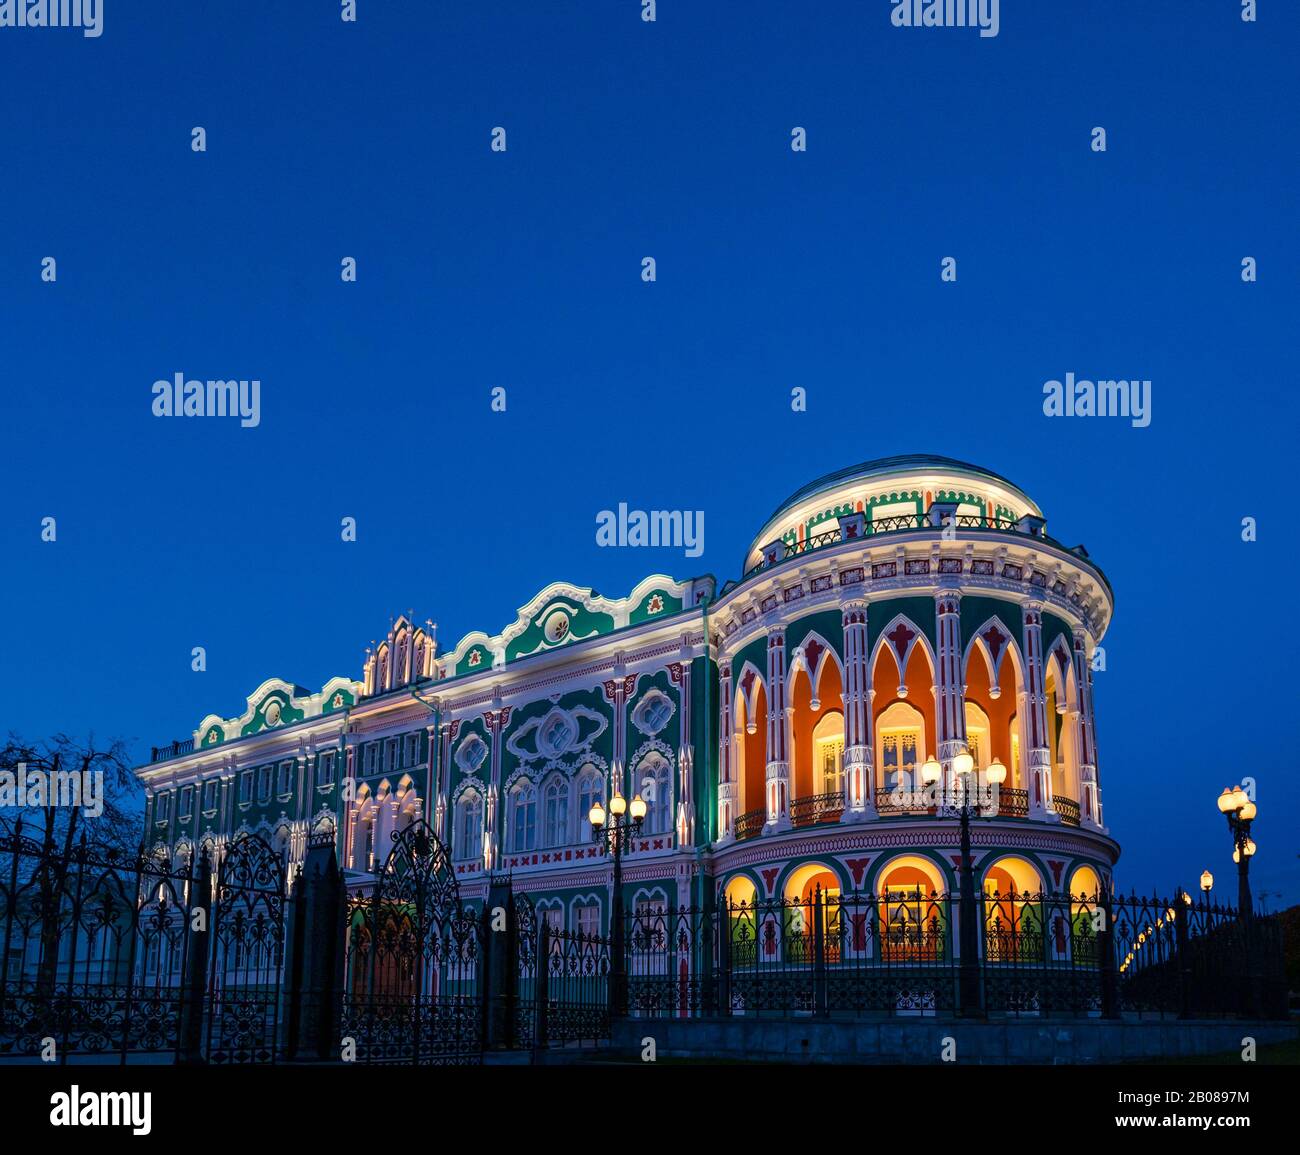 Das farbenfrohe historische Sevastyanova-Haus wurde nachts beleuchtet, Lenin-Allee, Jekaterinburg, Sibirien, Russische Föderation Stockfoto